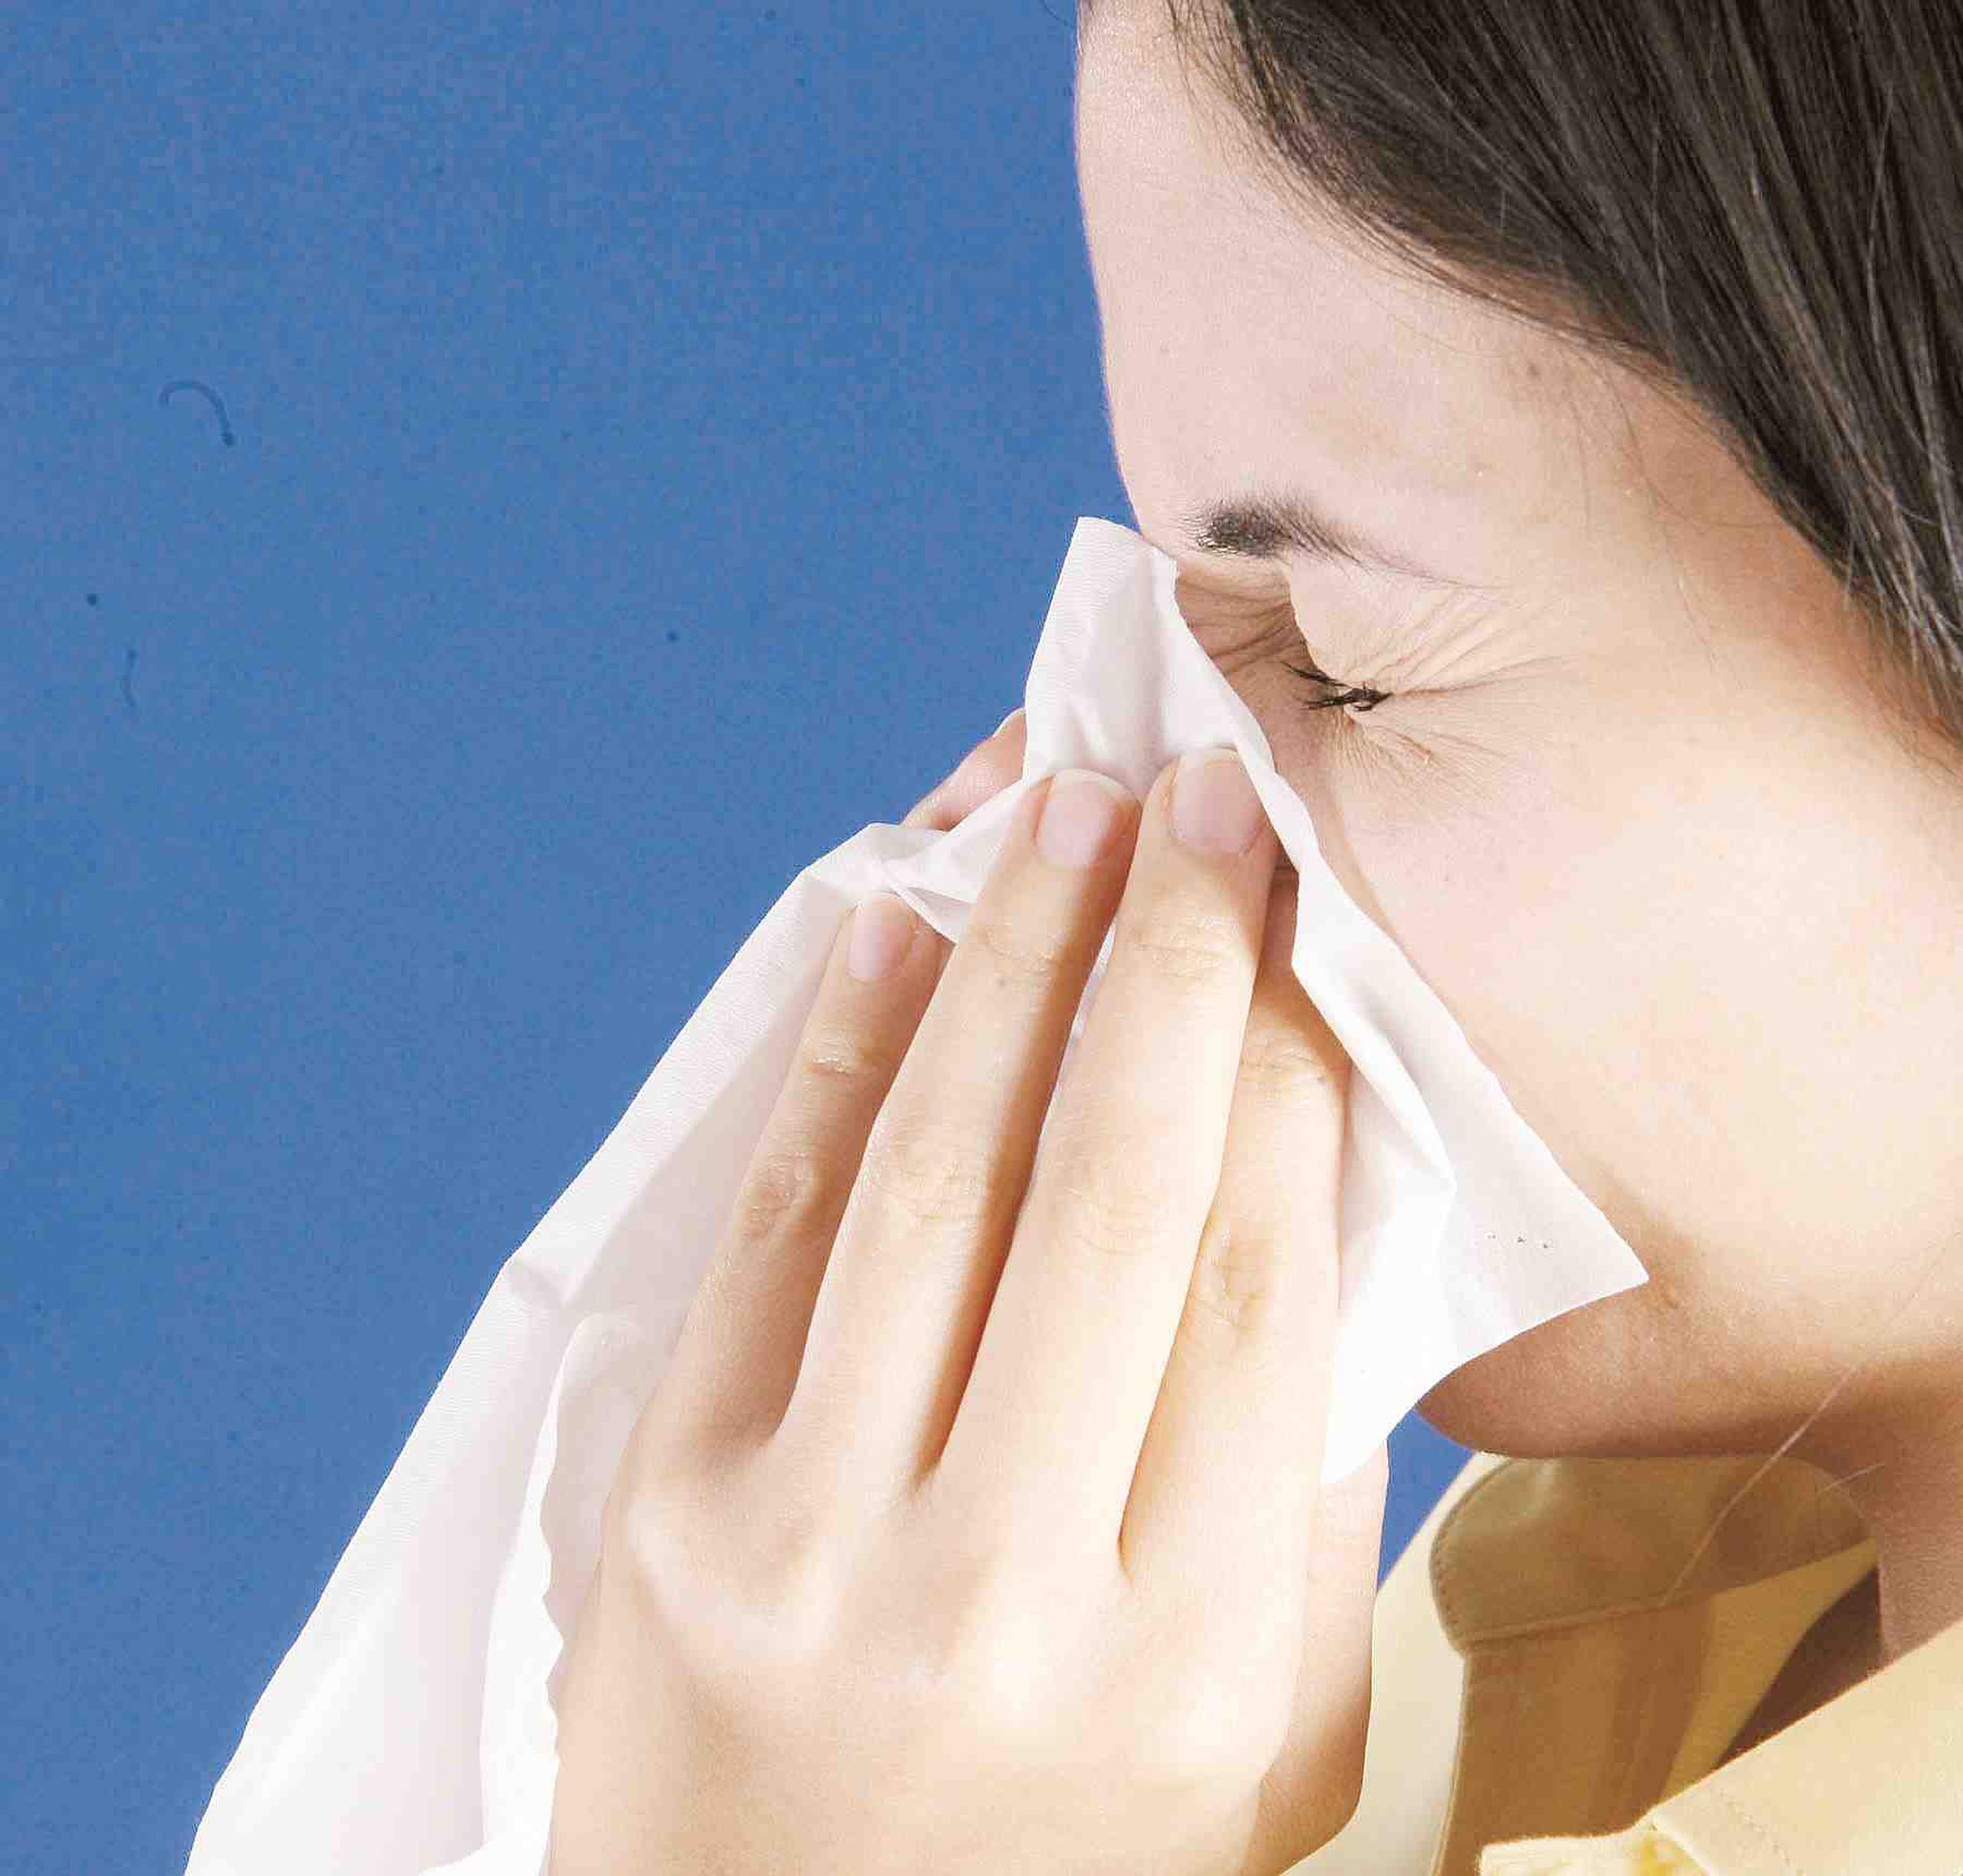 Popular descongestionante nasal no alivia realmente la congestión, según  expertos de EEUU